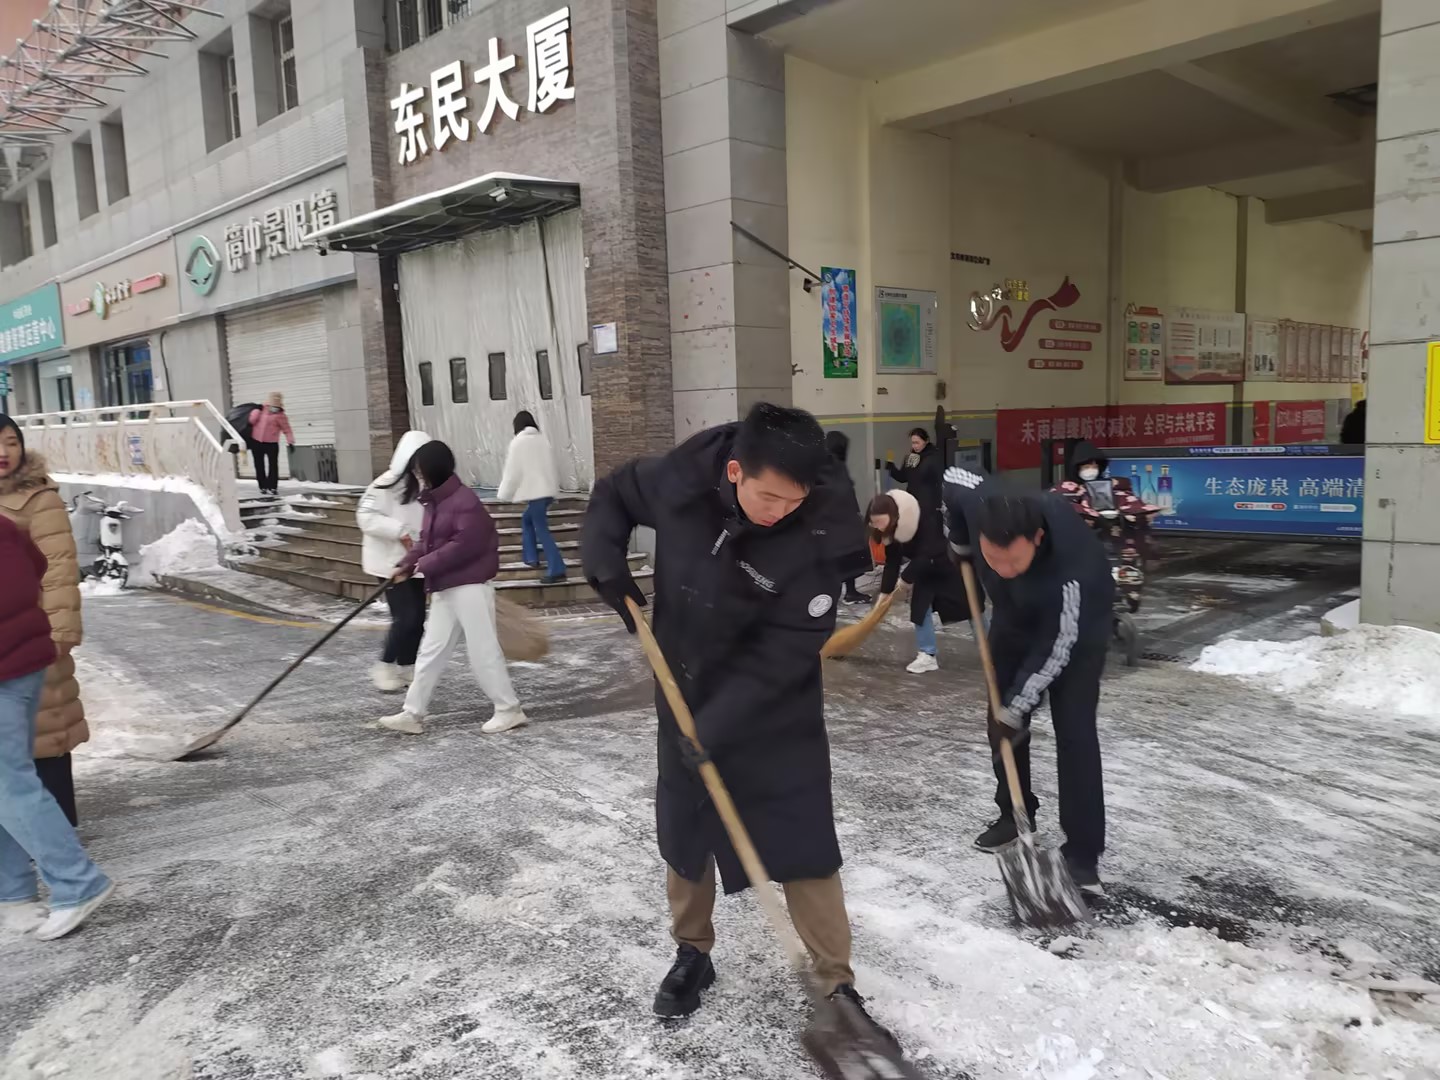 情暖冬日 扫雪护行——山西易学科技专修学院开展扫雪铲冰活动